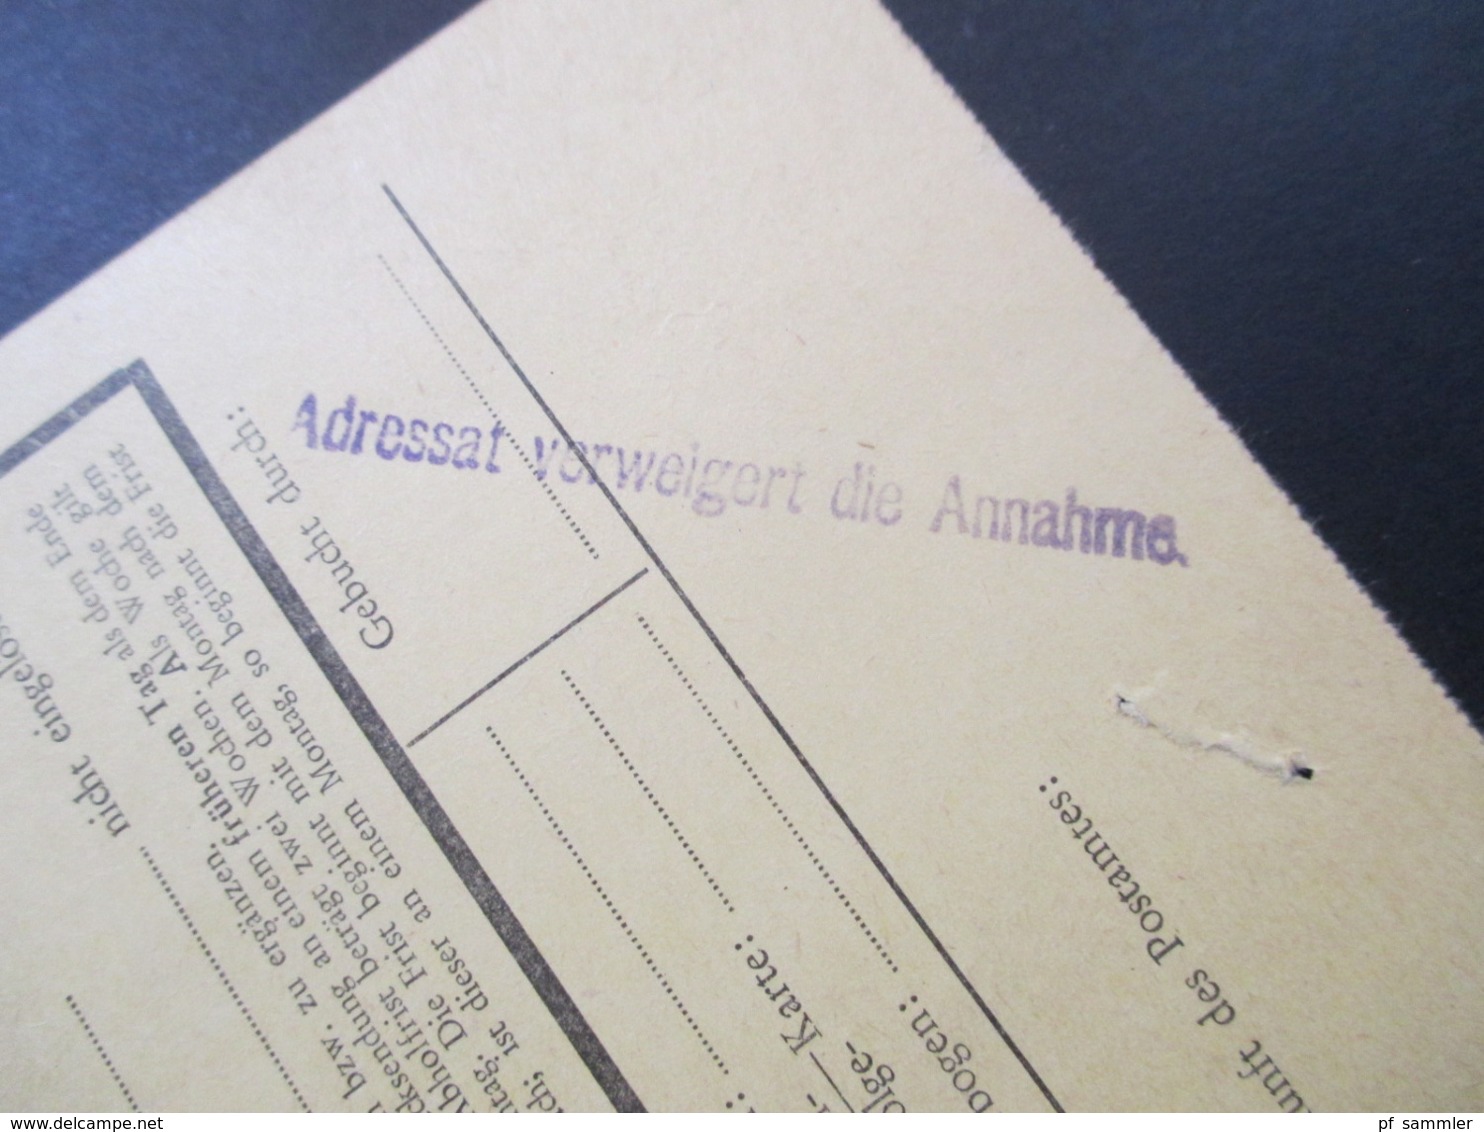 Österreich 1973 /74 Postauftrag AKB 9 Kraftfahrzeugsteuer Finanzamt Für Gebühren Stempel Adressat Verweigert Die Annahme - Covers & Documents